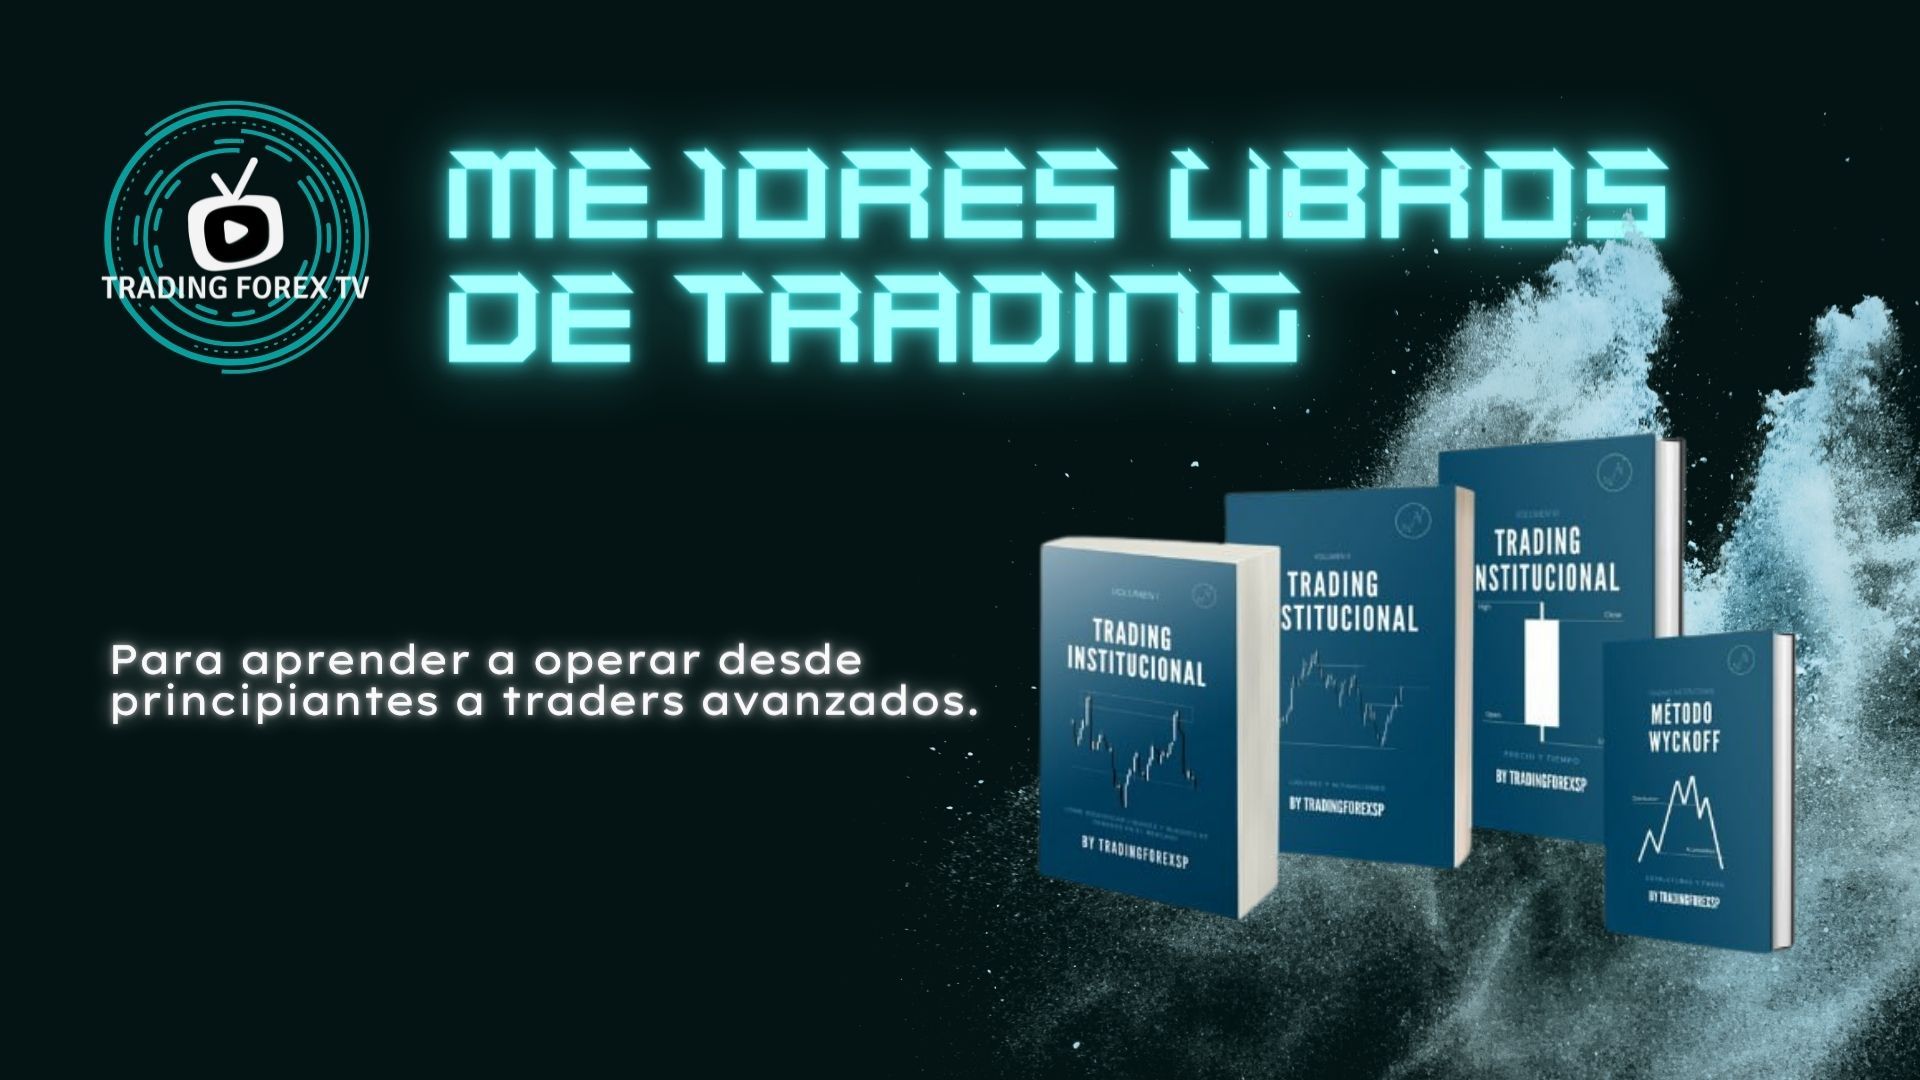 Trading Institucional y Método Wyckoff, los mejores libros de Trading, Forex y Bolsa este 2022